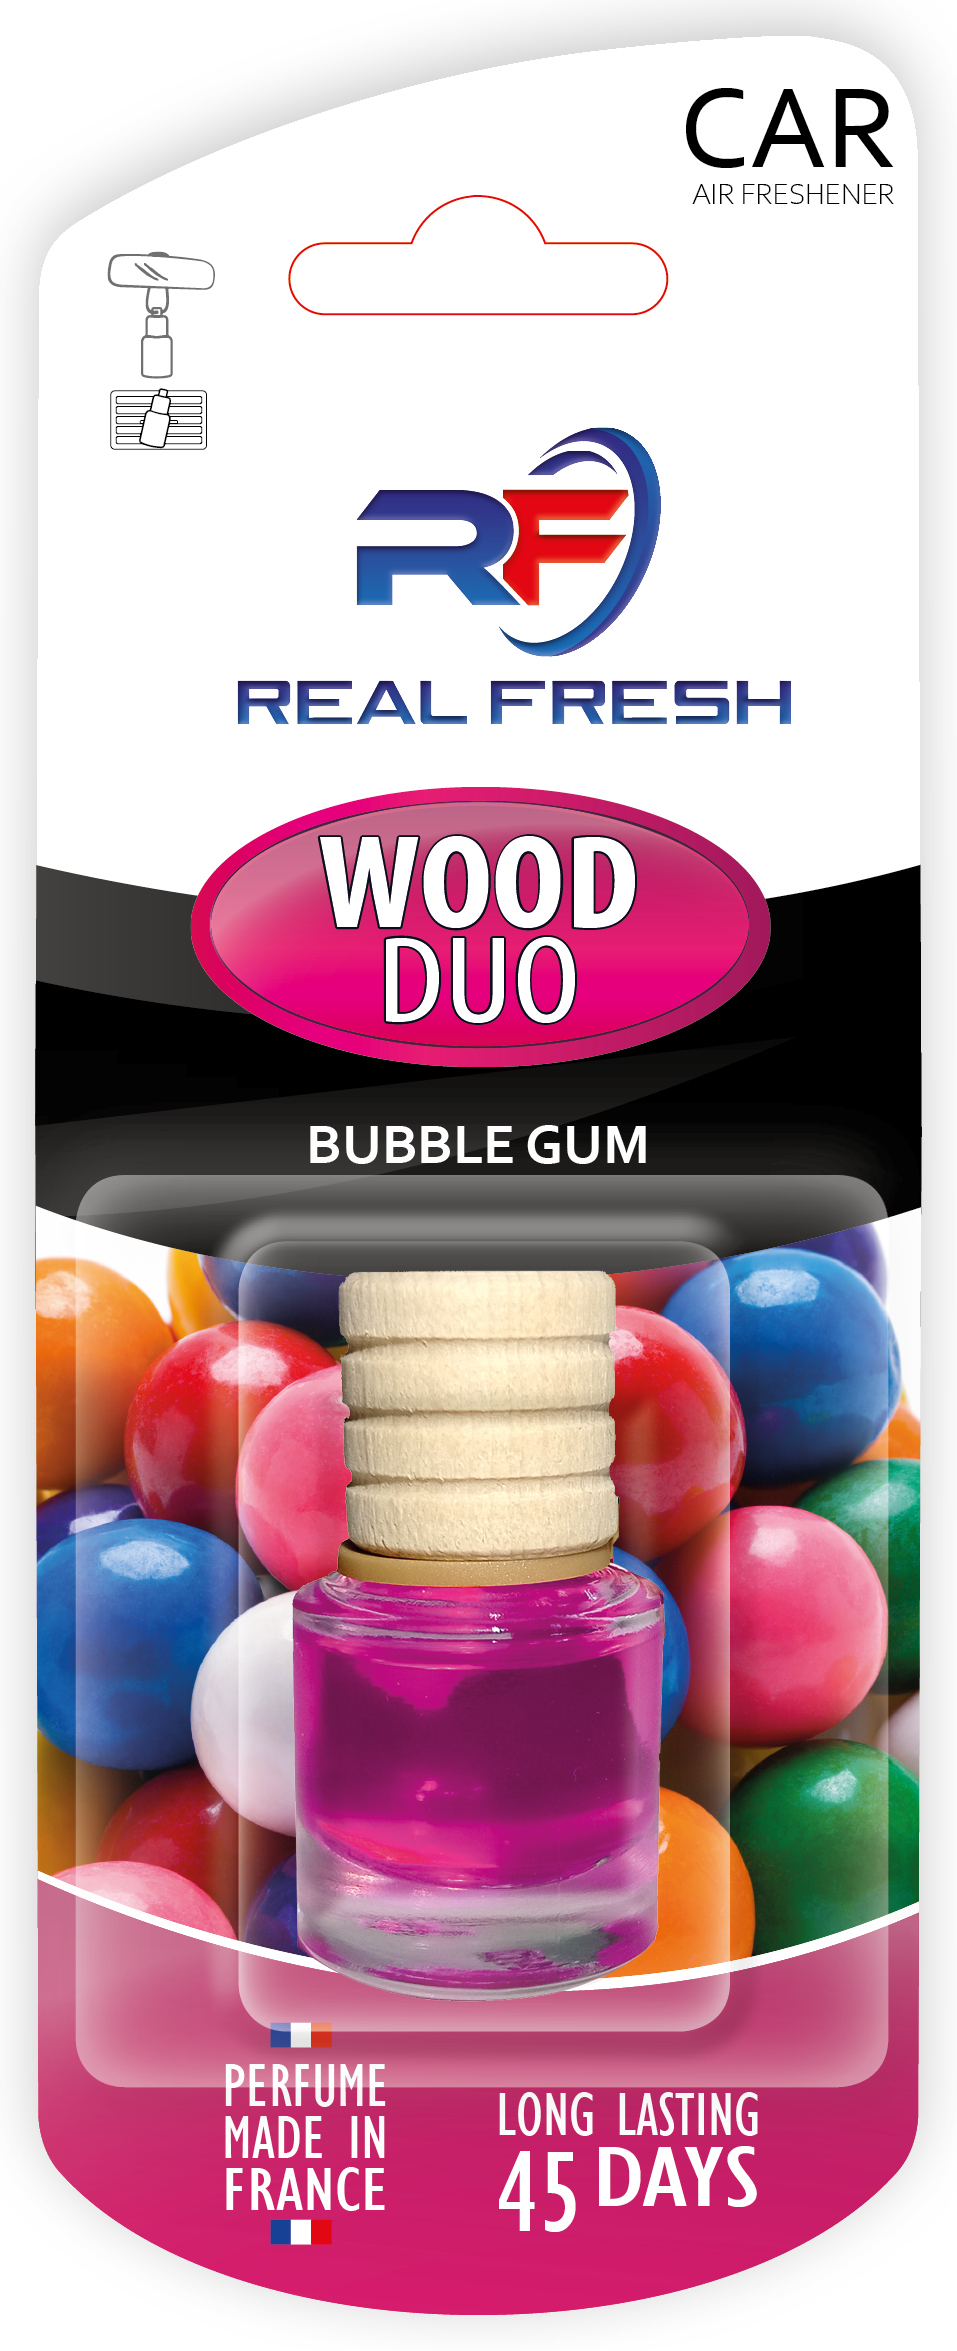 WOOD DUO Bubble Gum Image